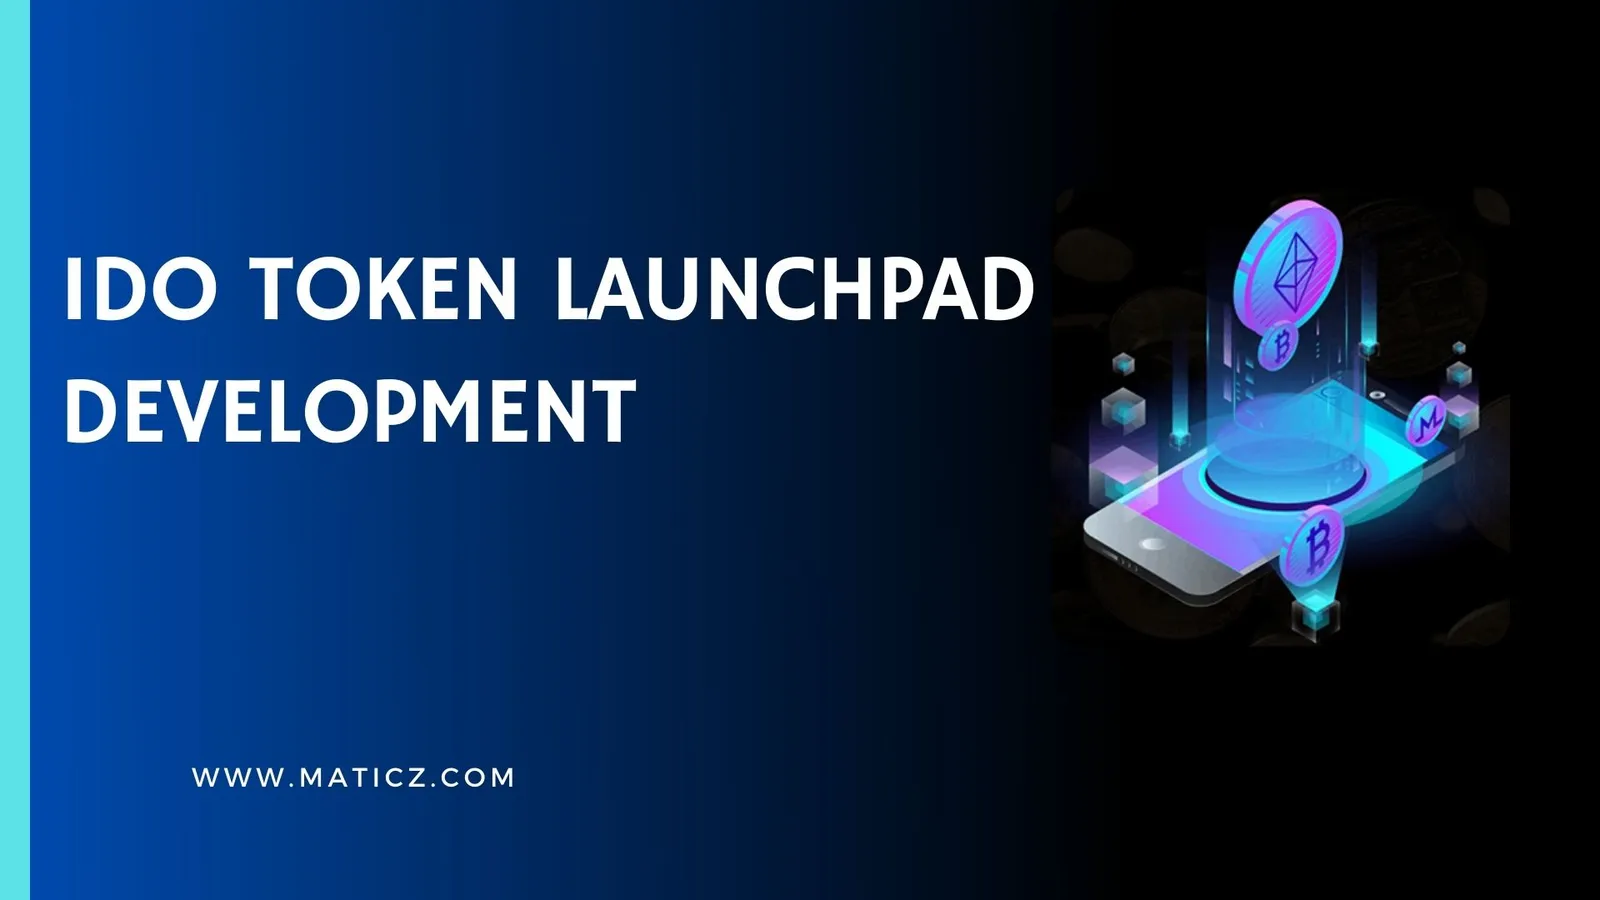 IDO launchpad Development Company